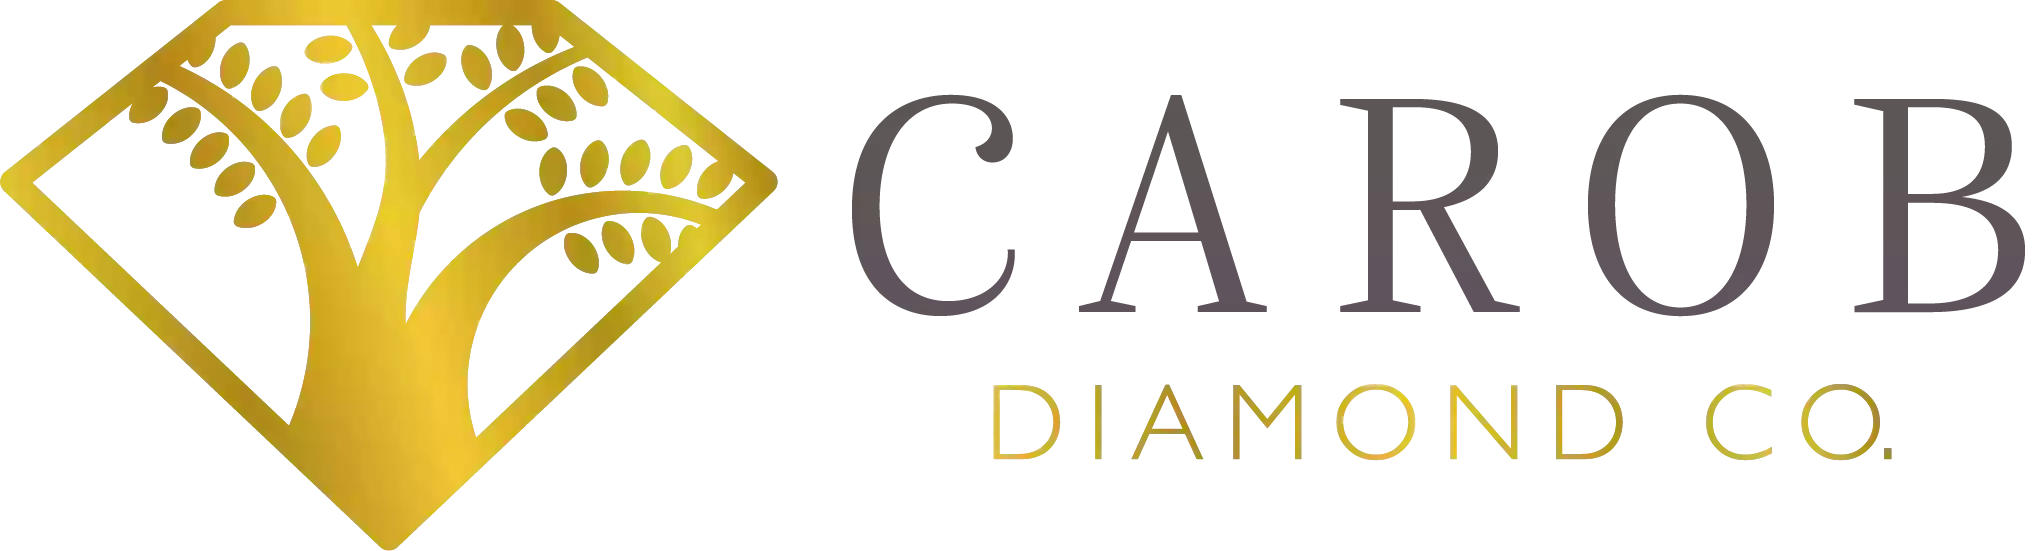 Carob Diamond Co.